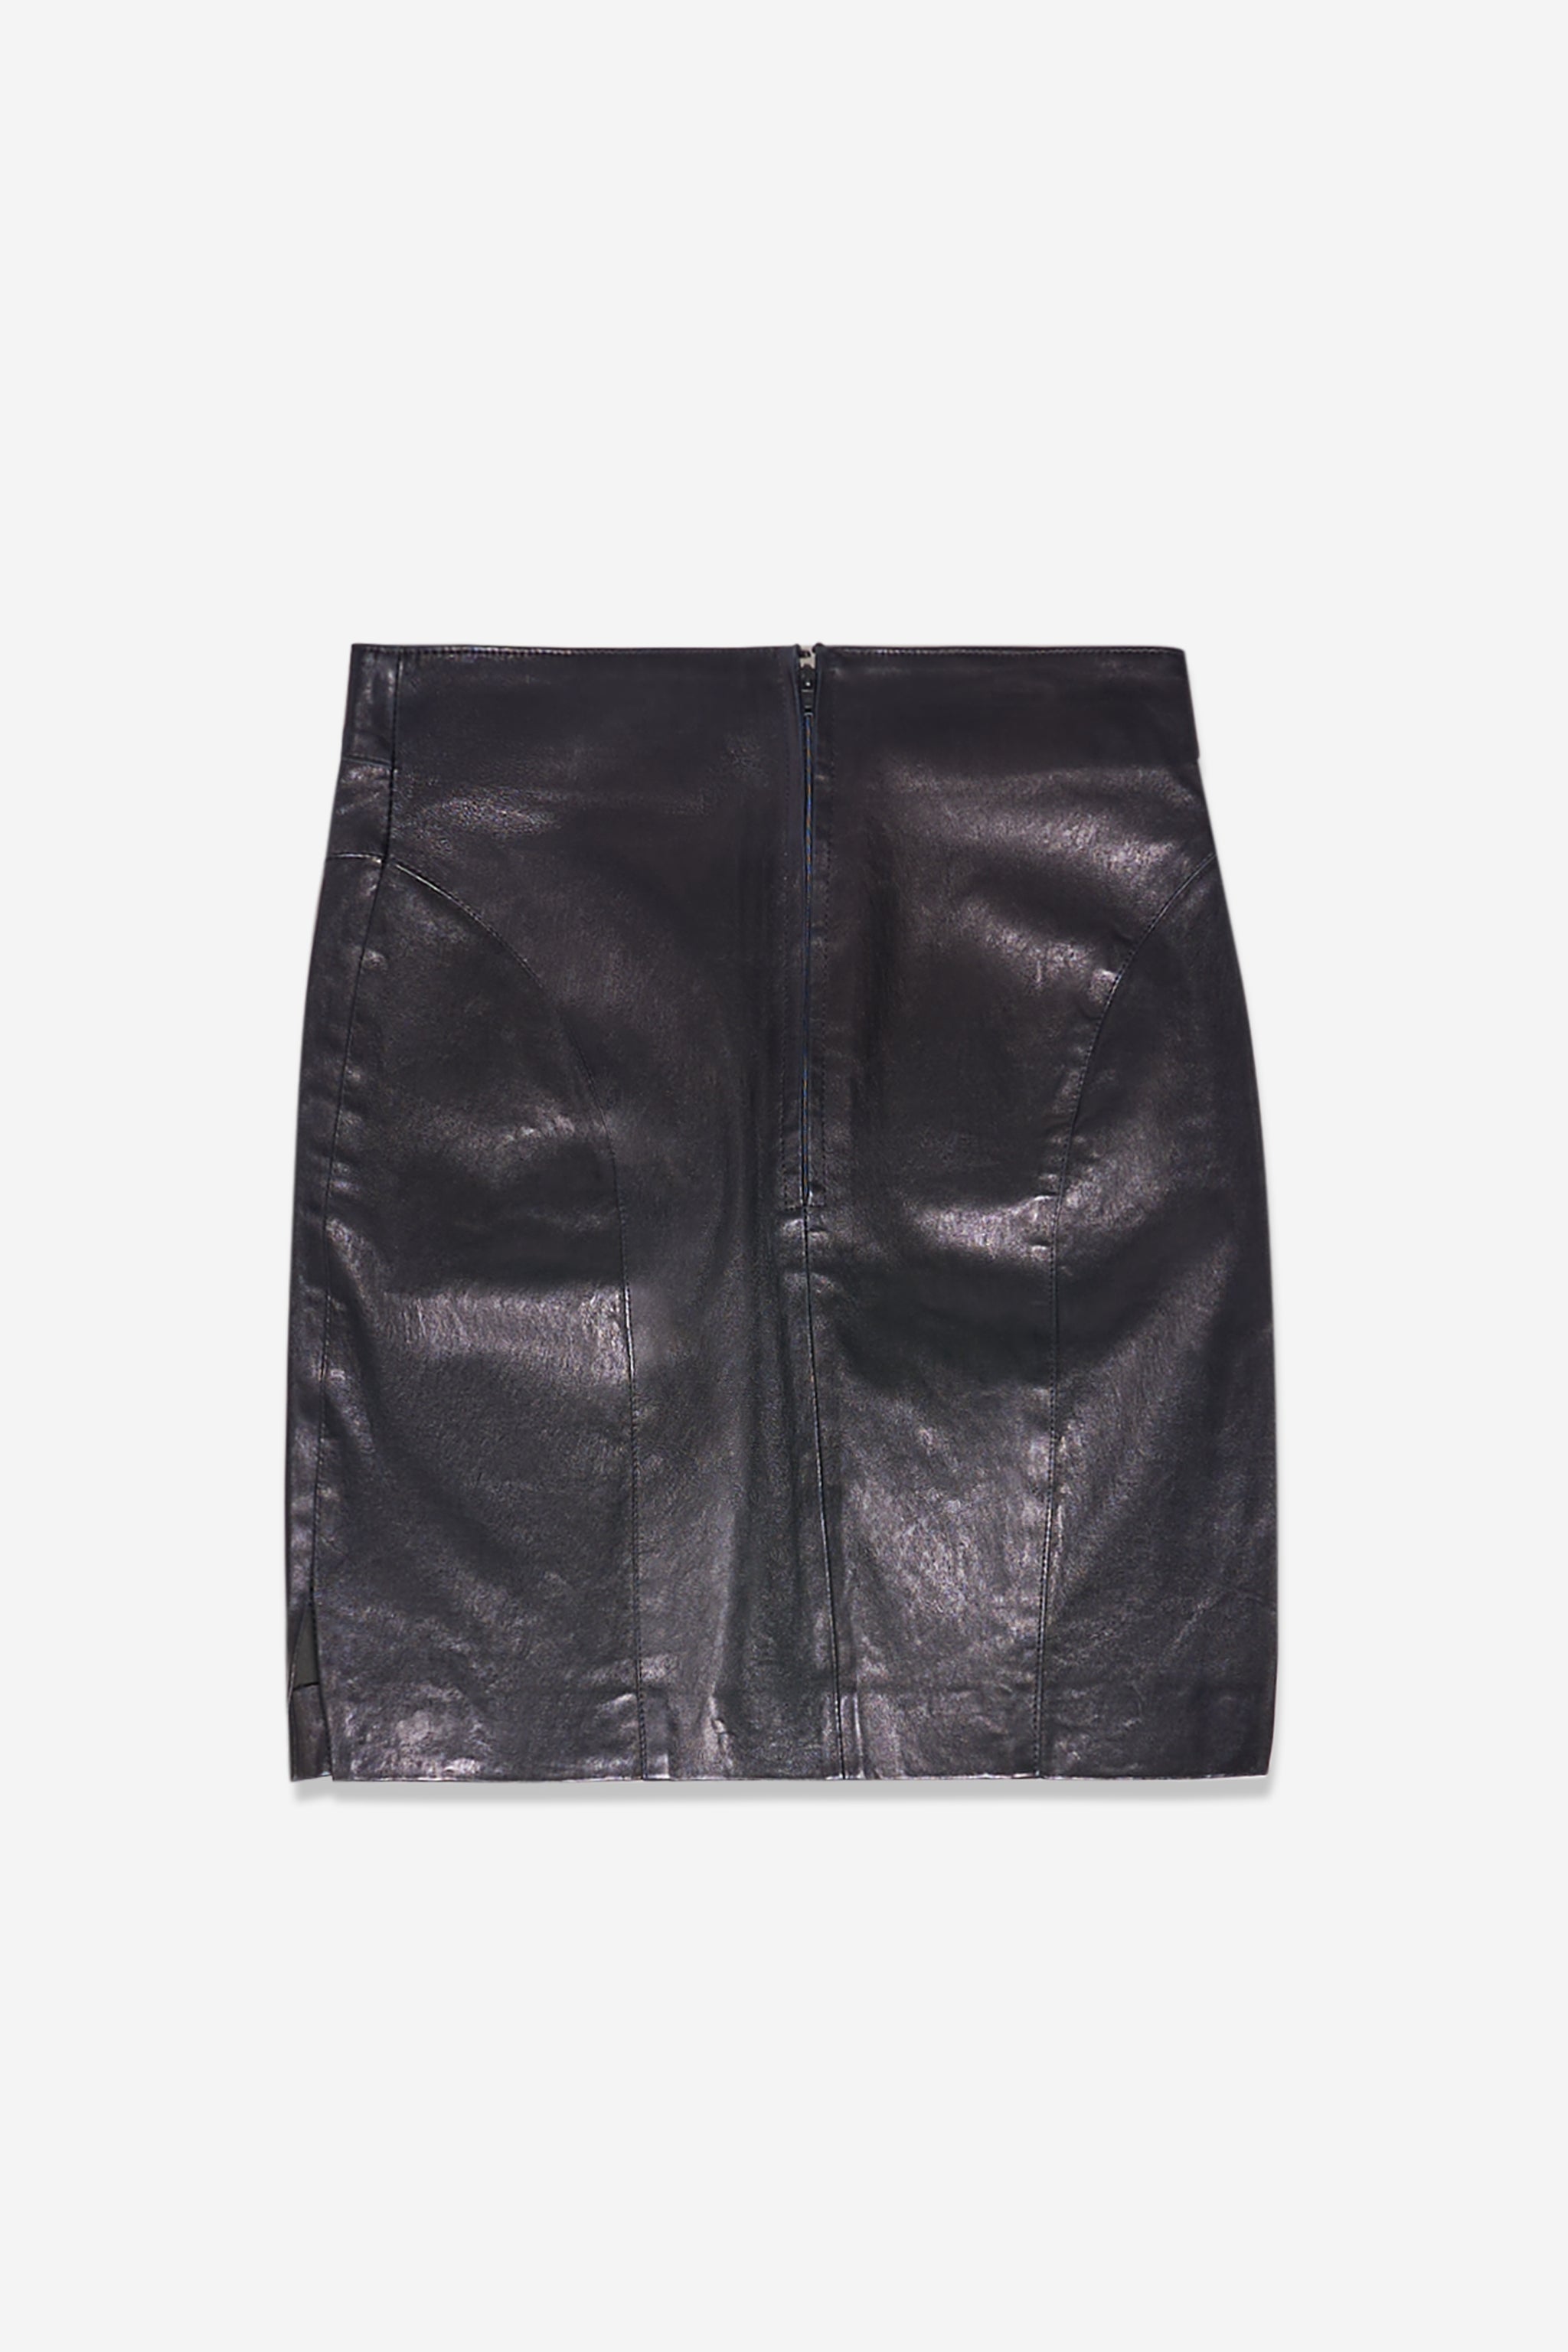 Shiny black leather skirt